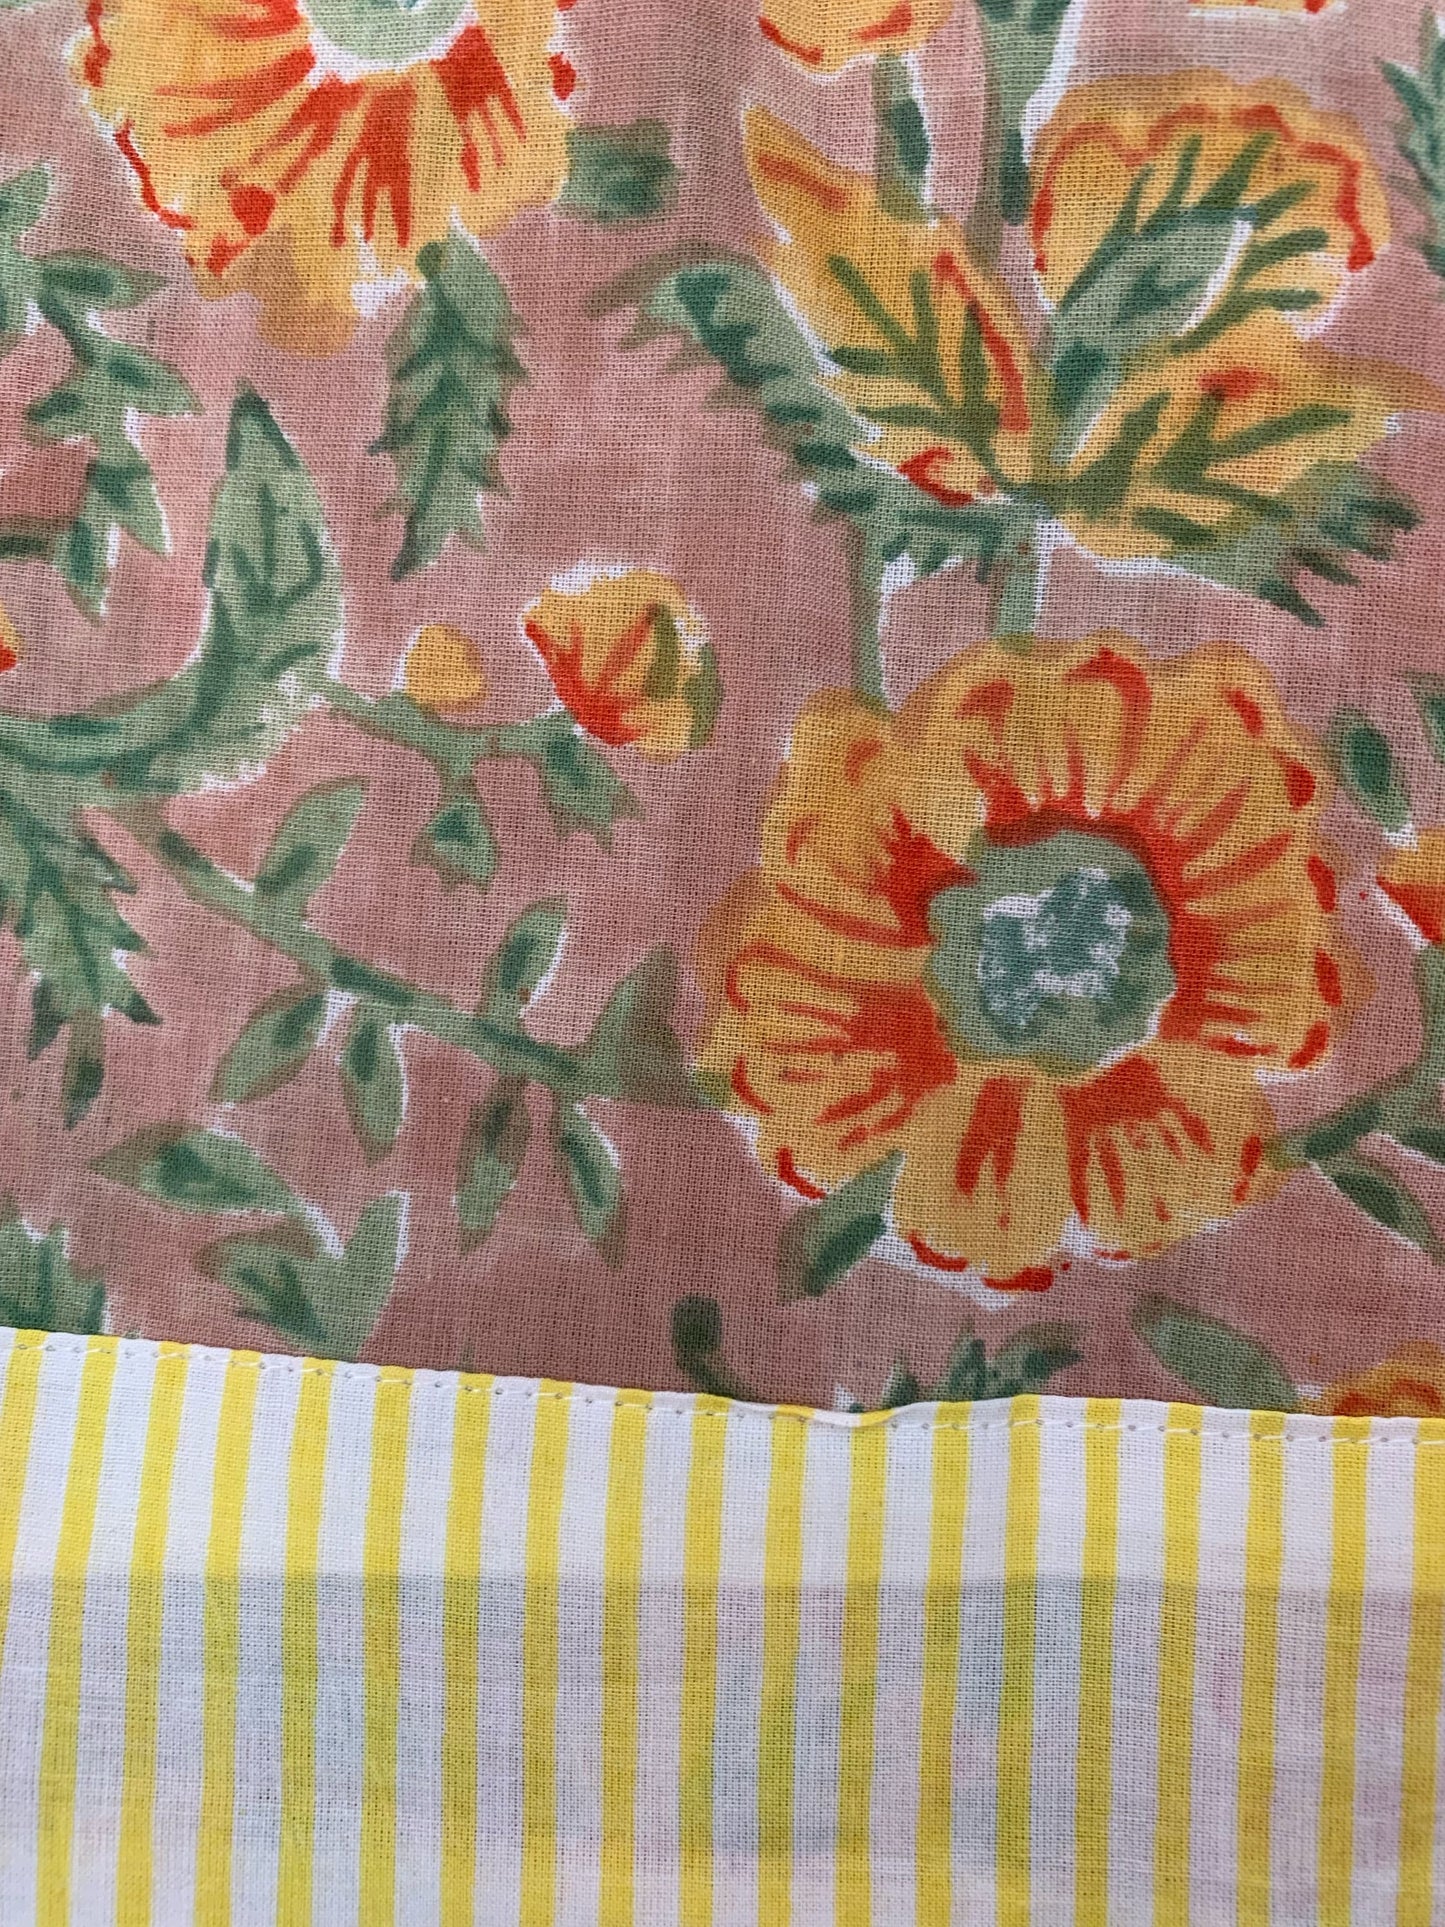 SET regalo · Bata kimono y bolsa de aseo juego · Algodón 100% puro estampado block print artesanal en India · Amarillo mostaza mix